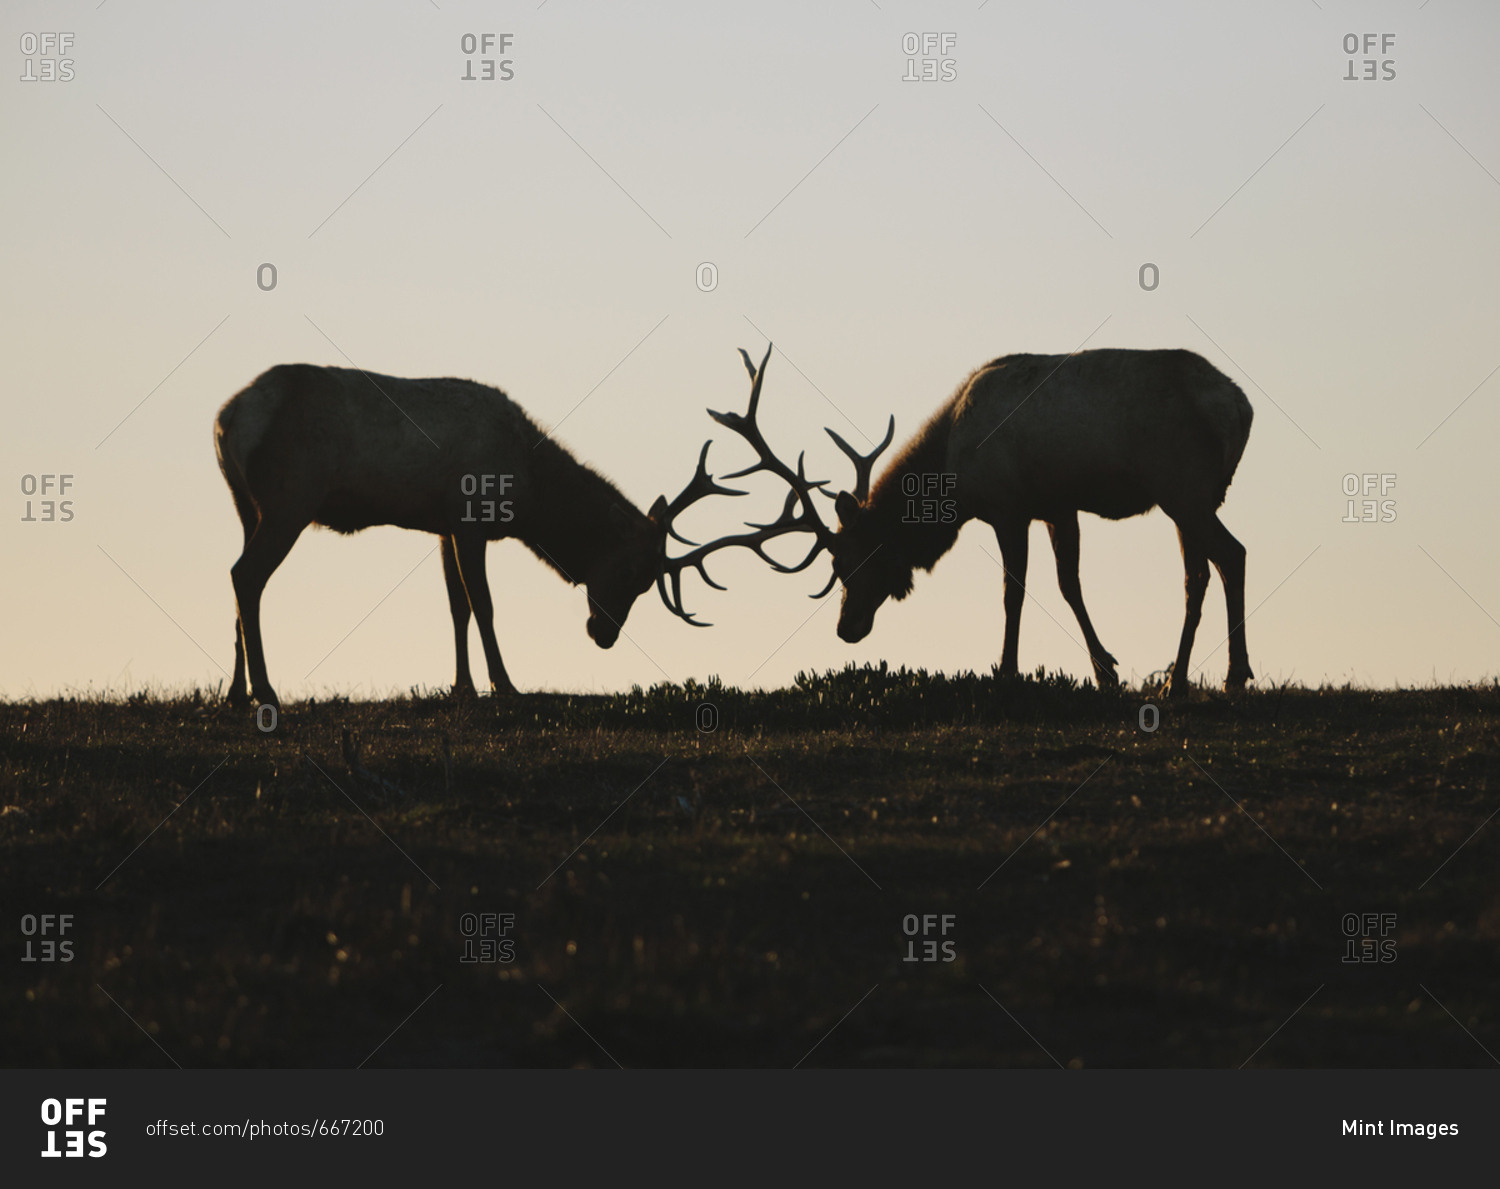 Silhouette of two Tule elk with locked antlers at dusk